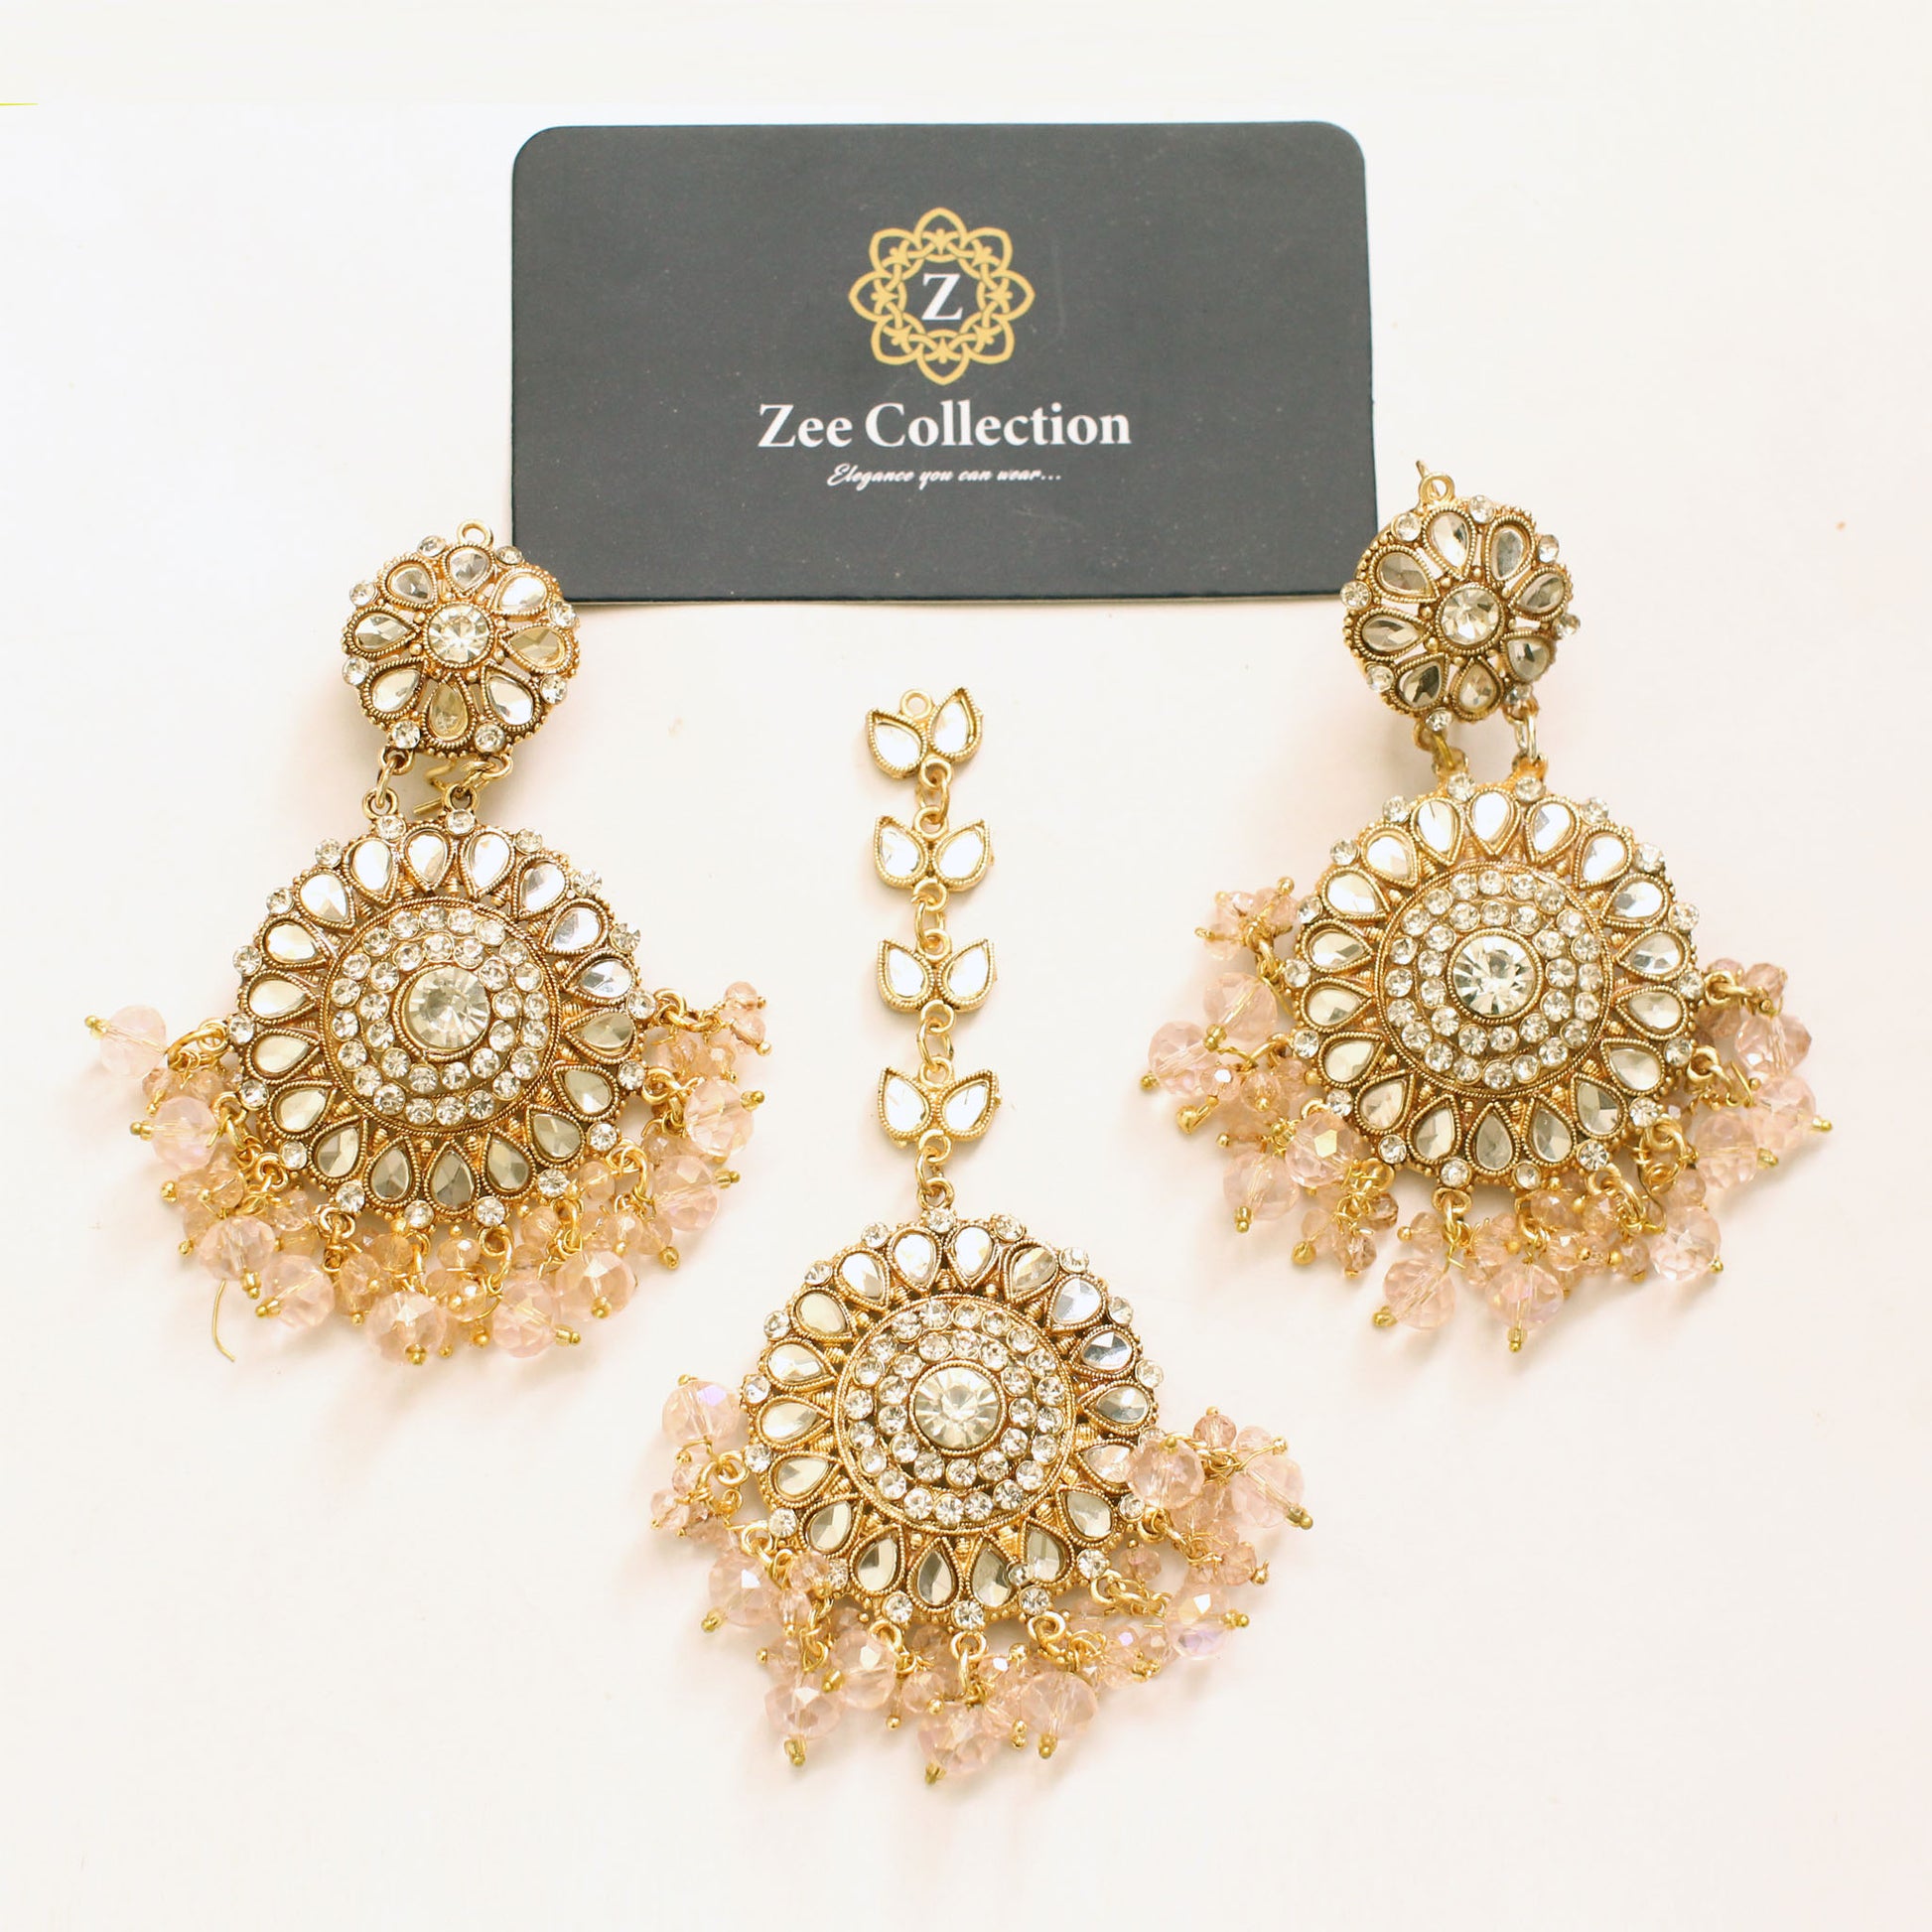 Noor Jahan Earrings and Bindi Set - Zee Collection pk